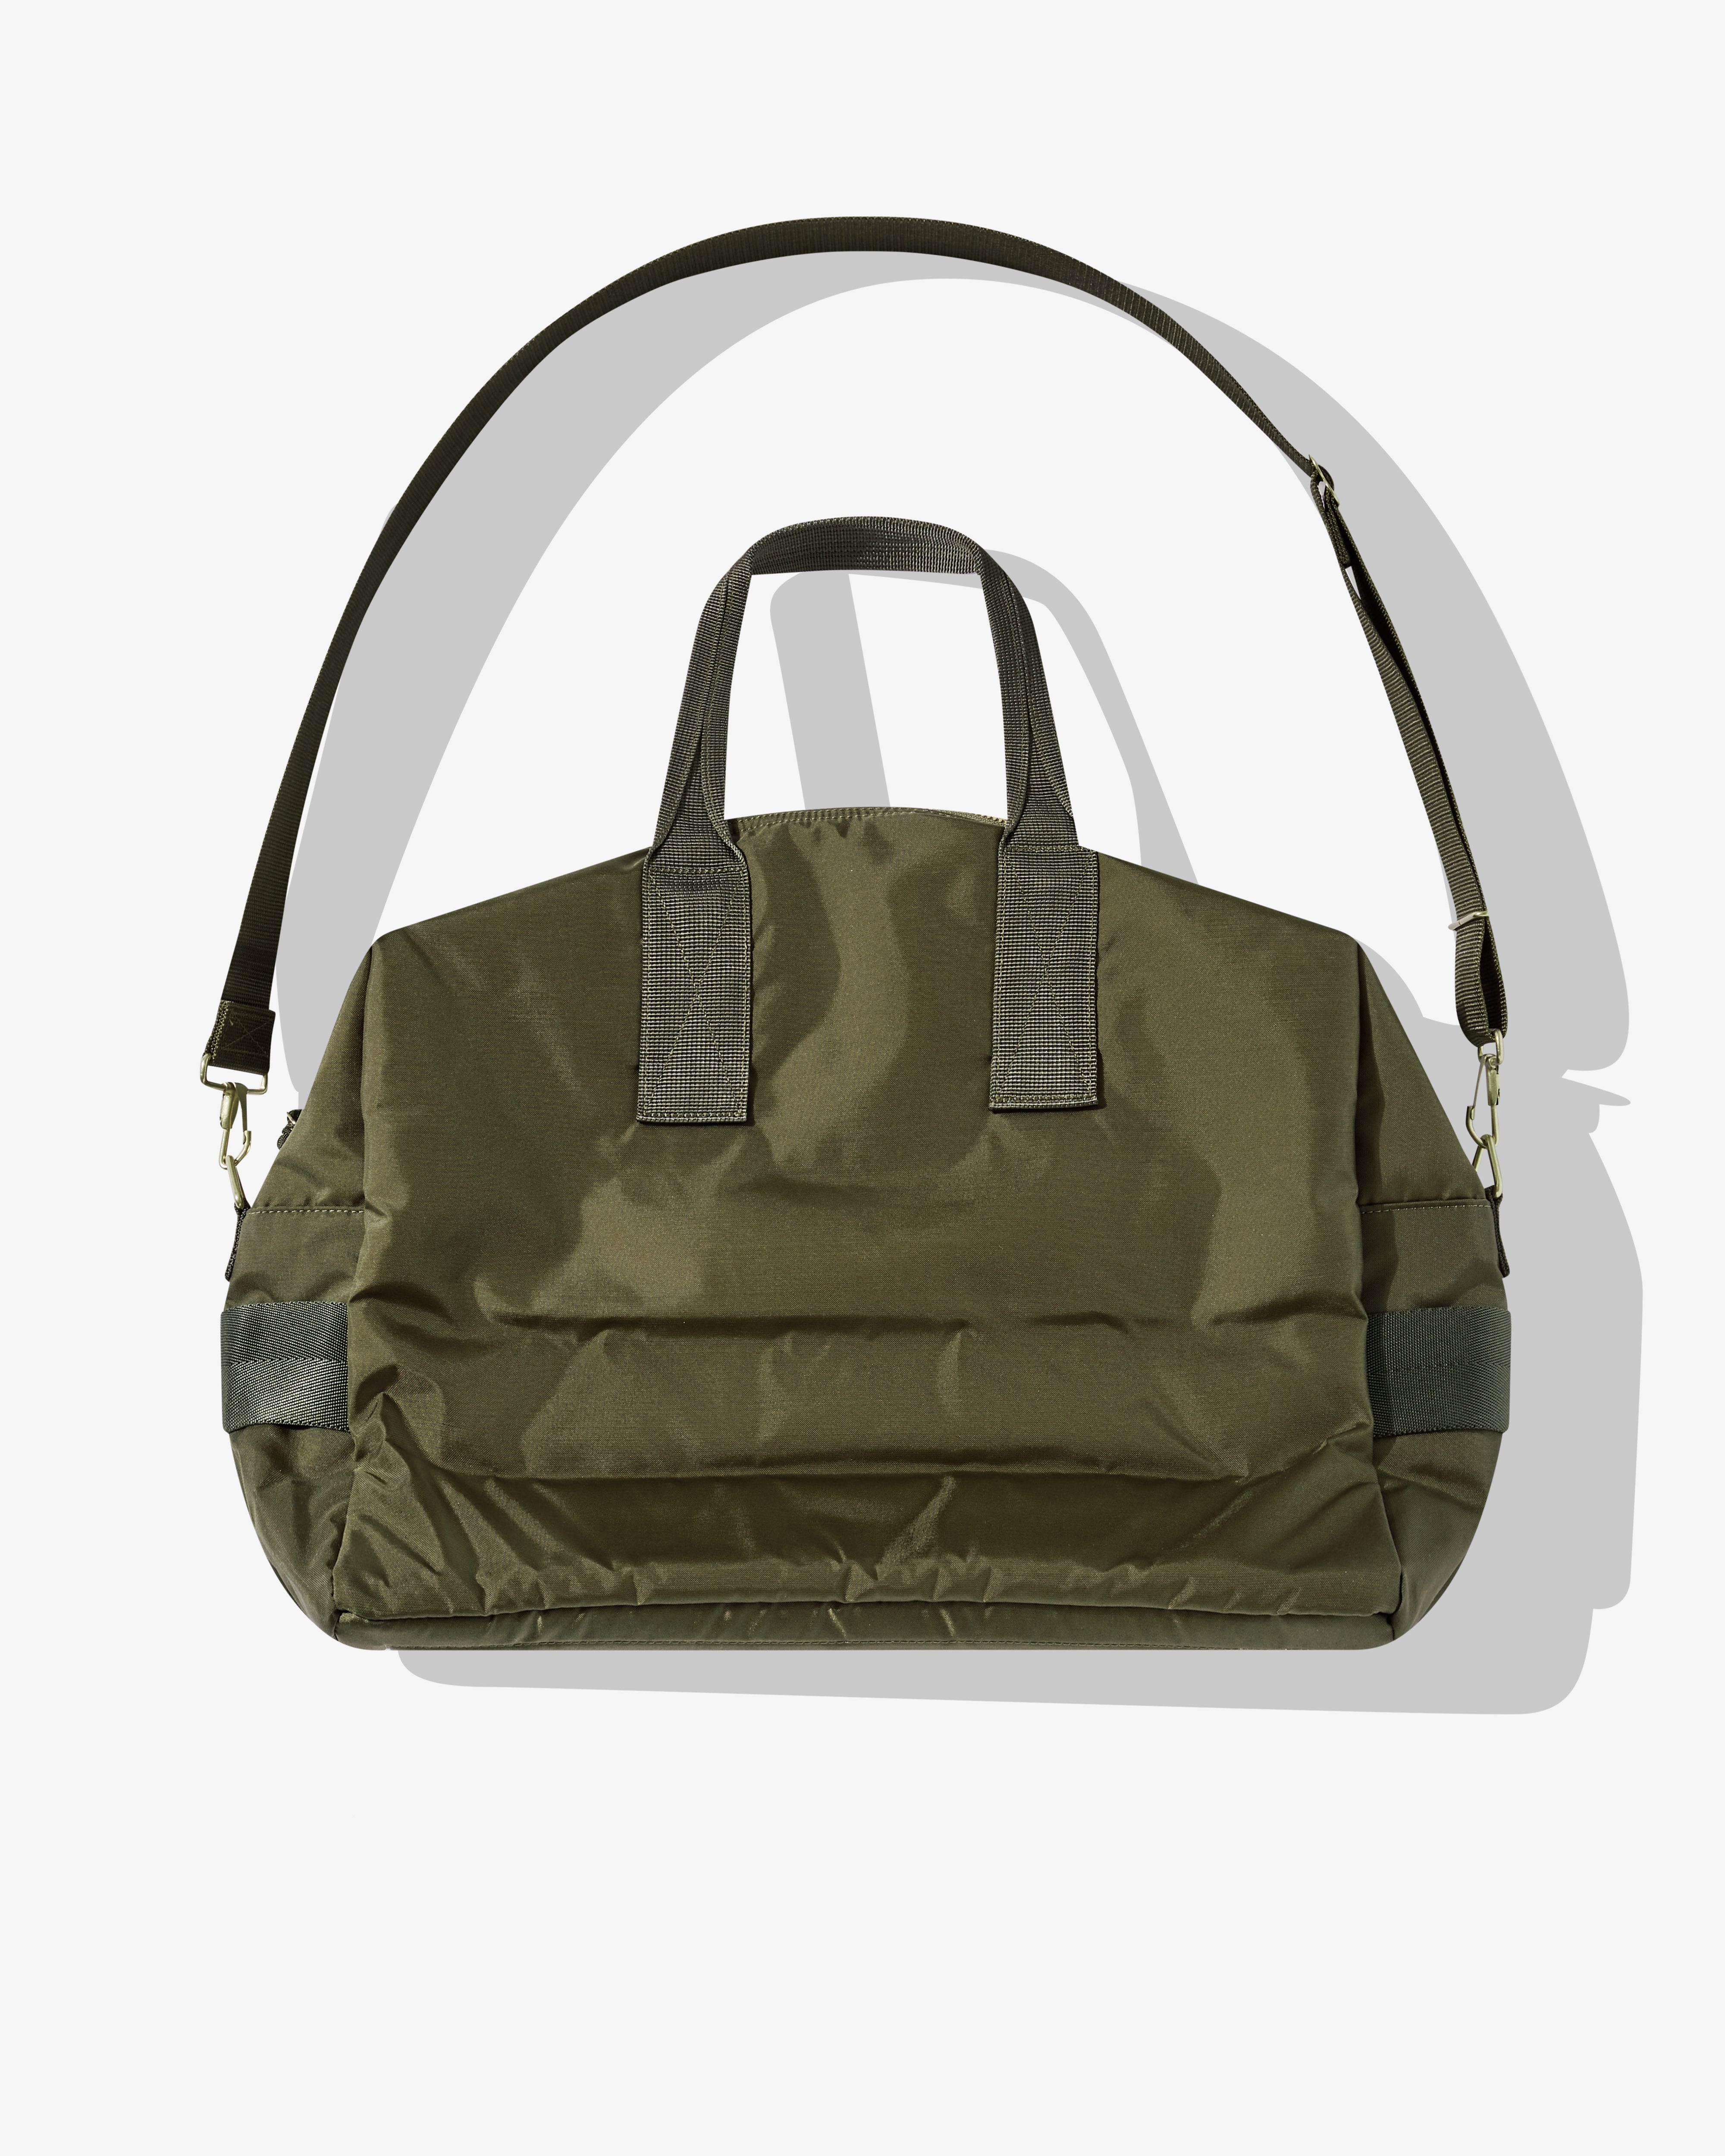 Porter-Yoshida & Co. - Force 2Way Duffle Bag - (Olive)